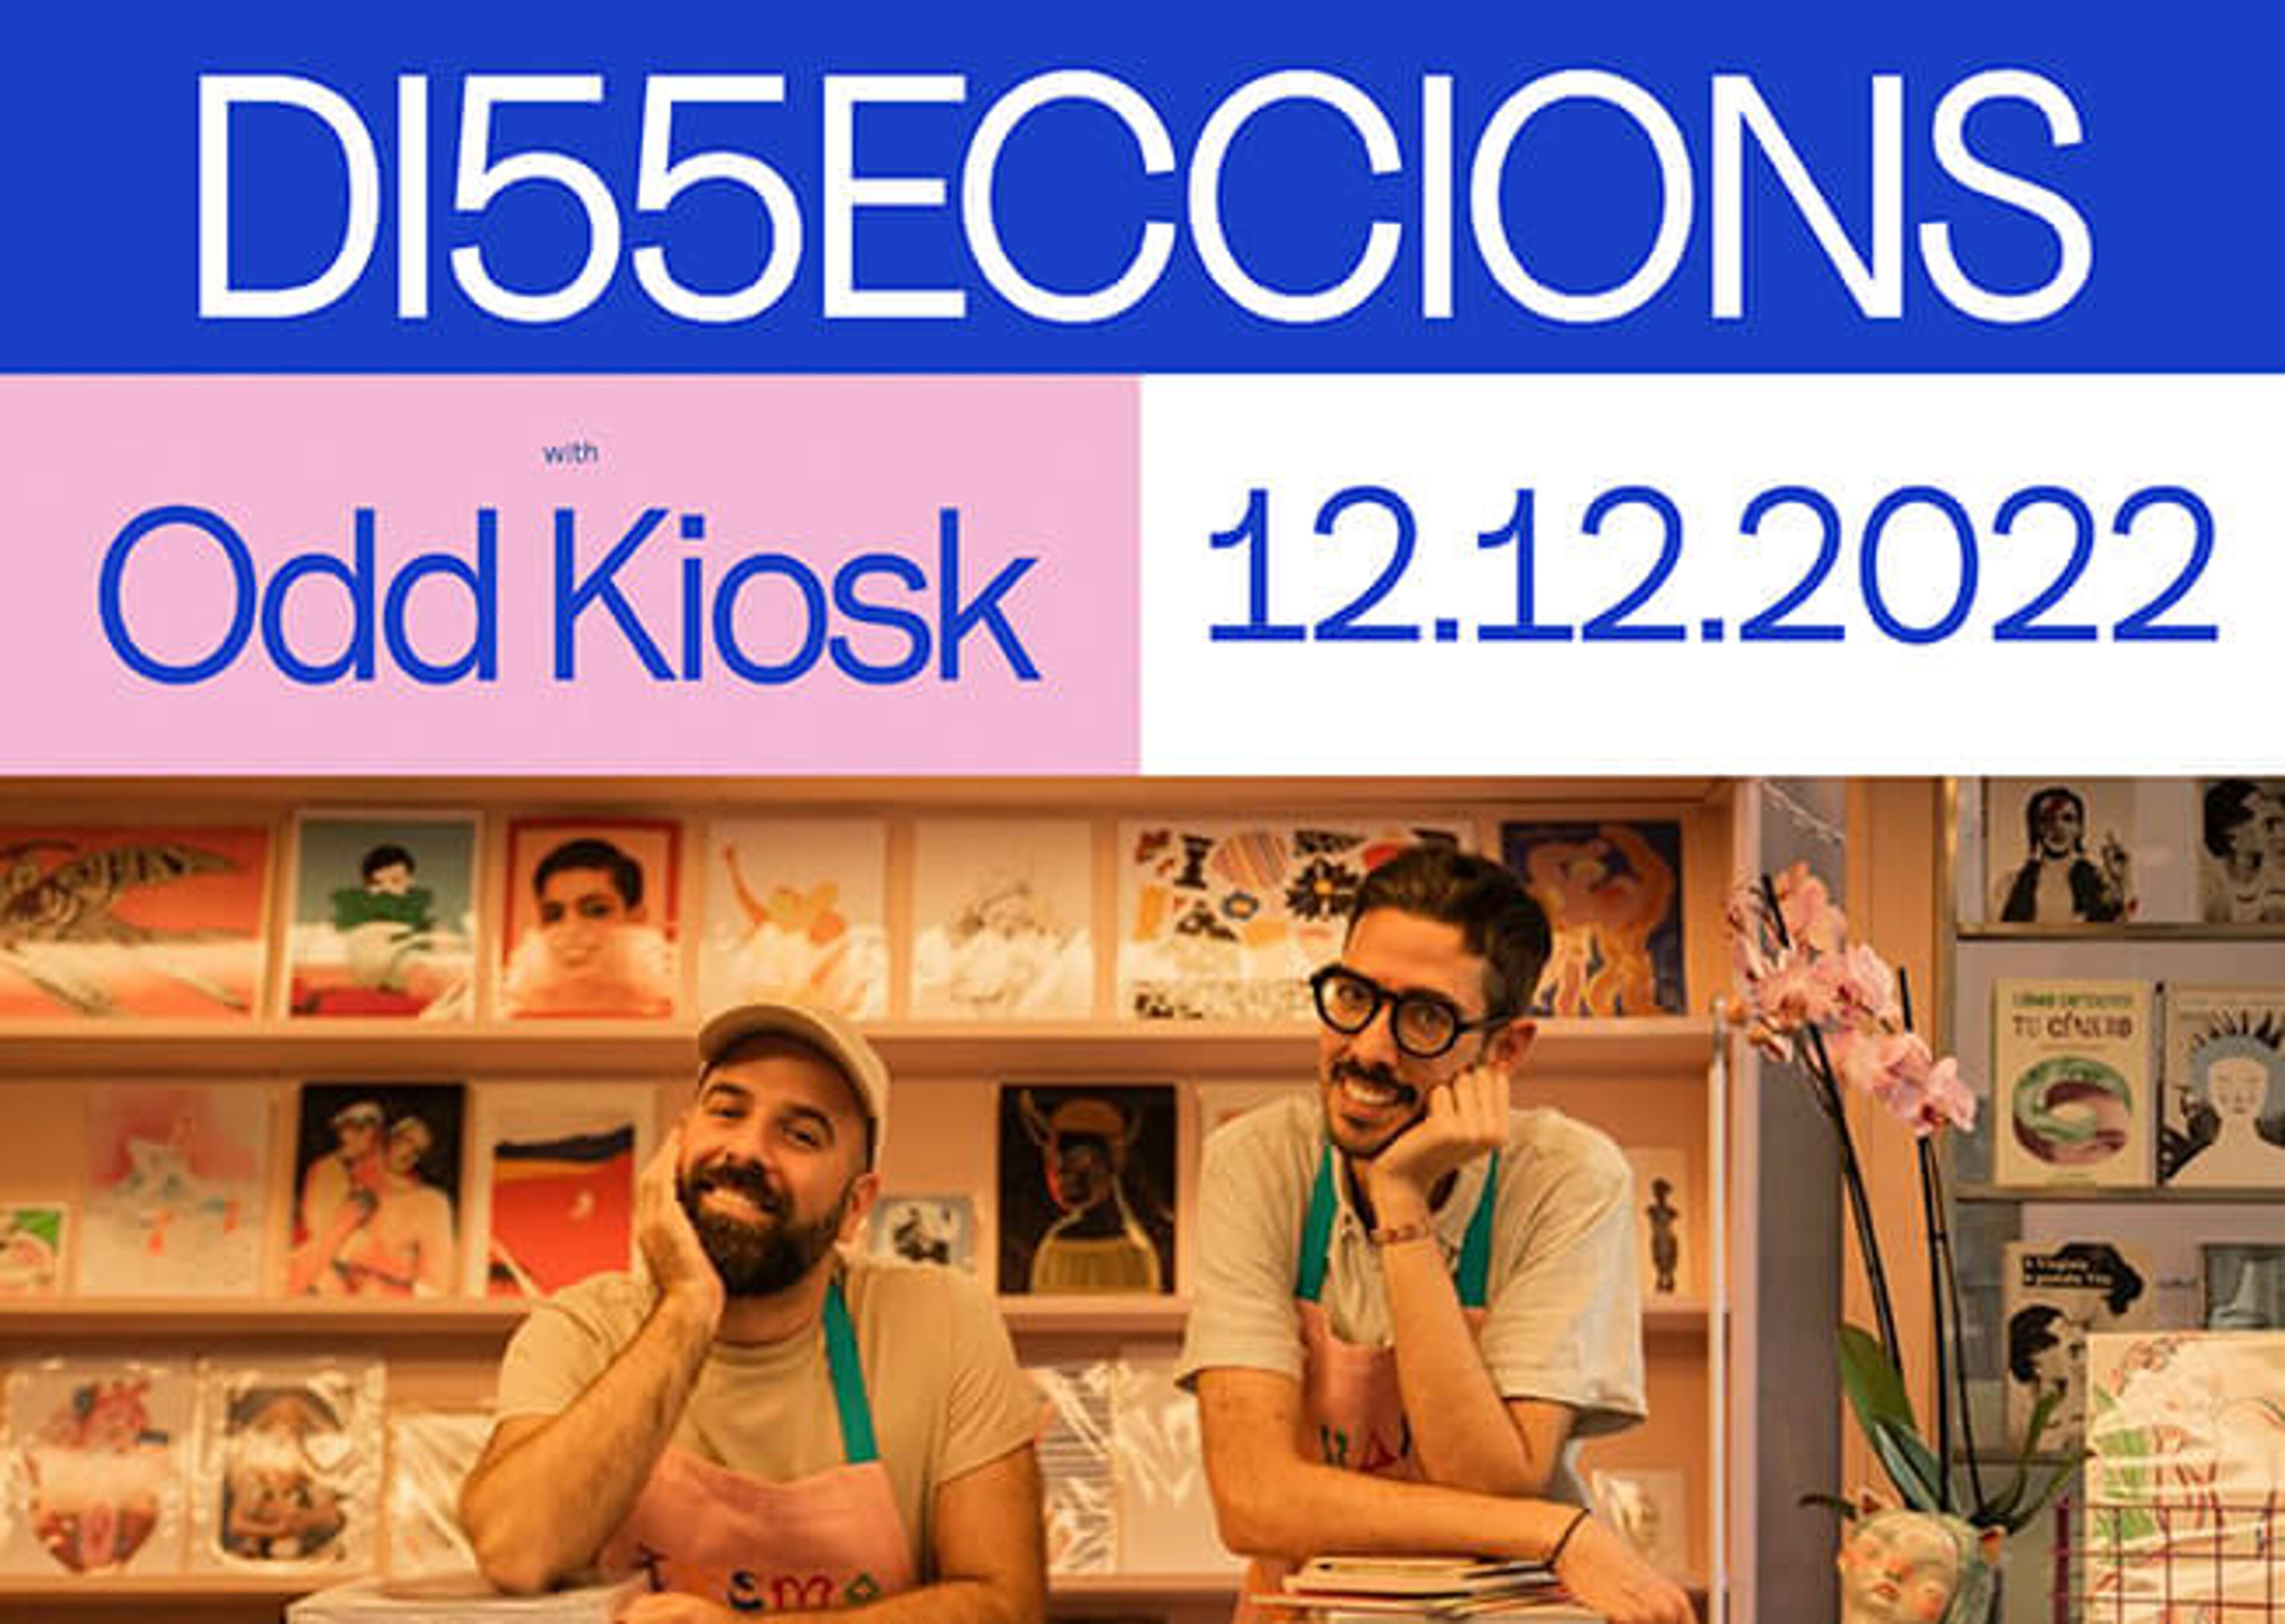 Dues persones a Odd Kiosk sota un cartell 'D15ECCIONS', datat del 12.12.2022.